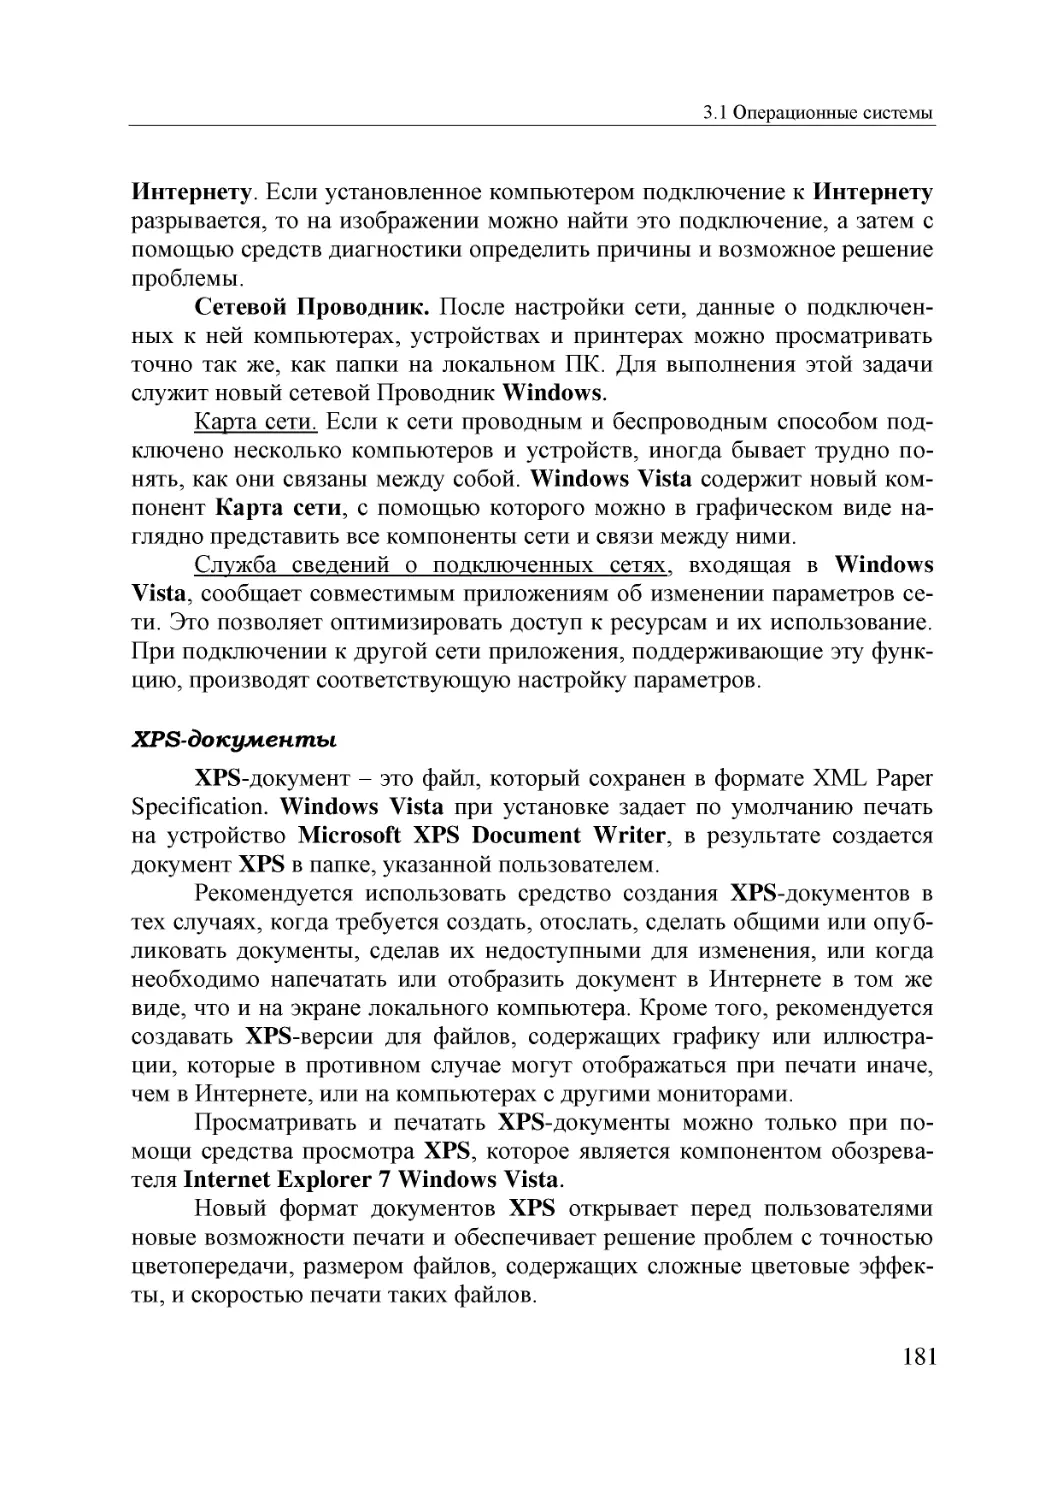 Informatika_Uchebnik_dlya_vuzov_2010 181